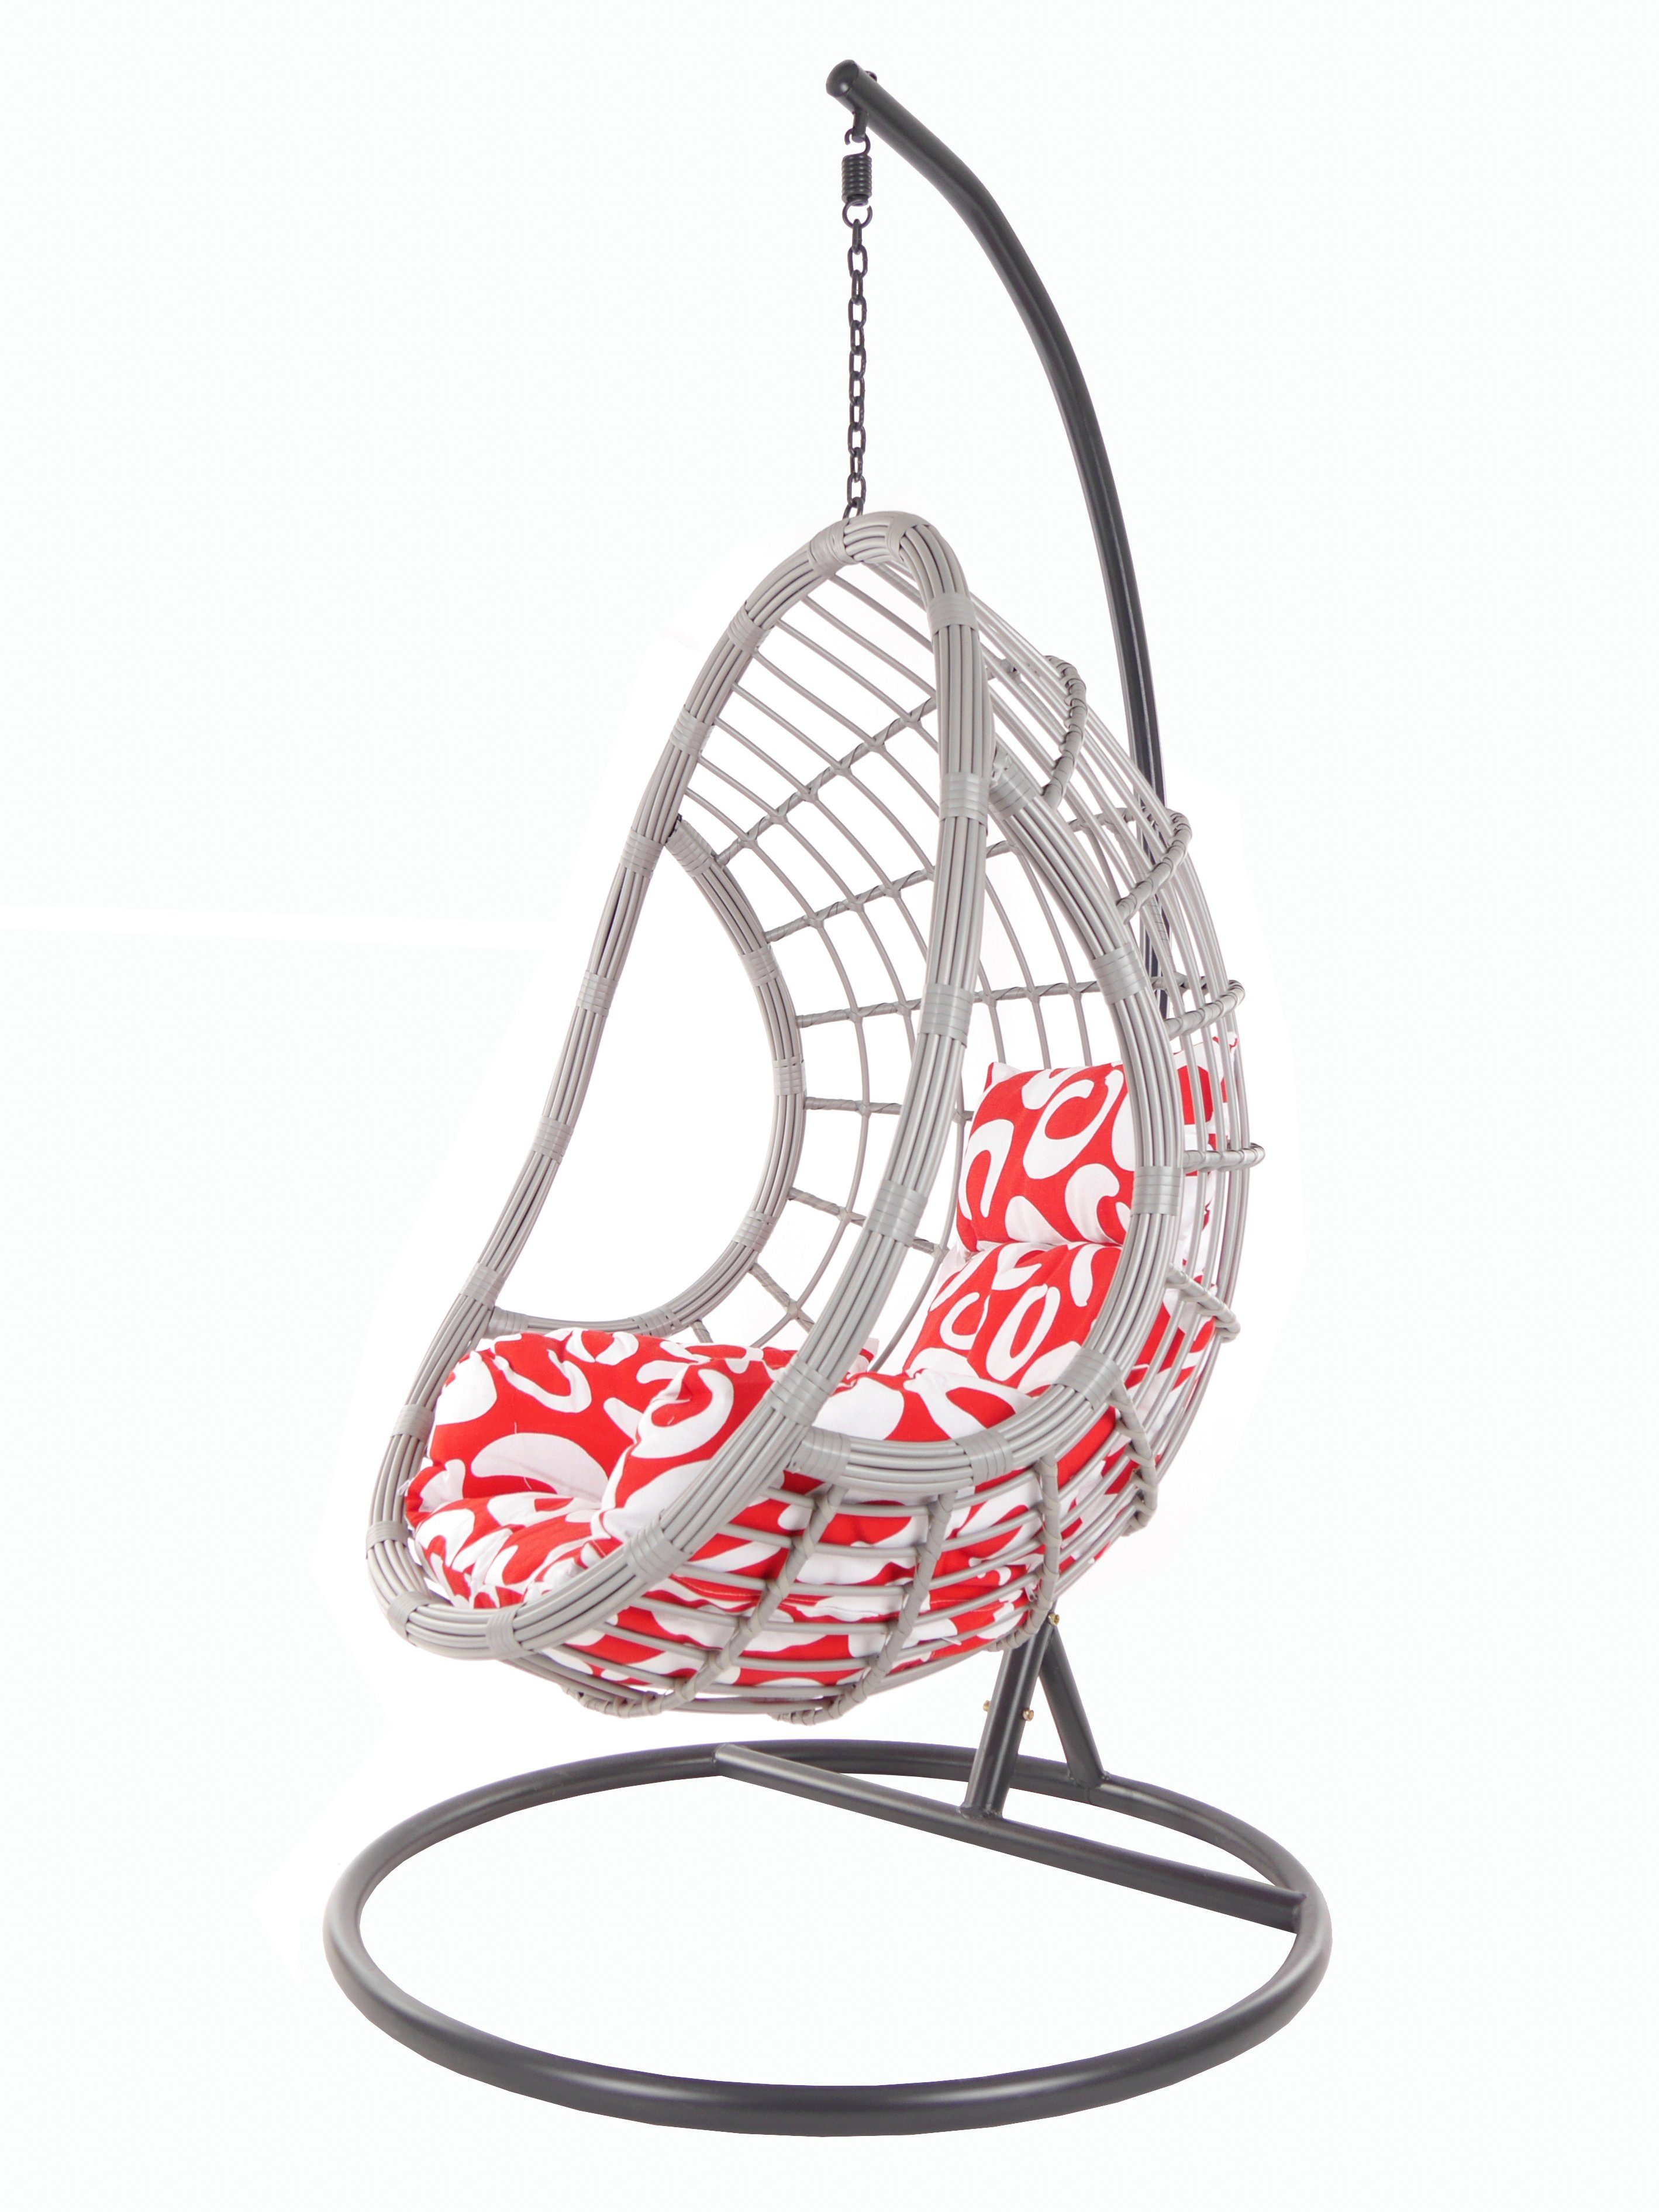 PALMANOVA Hängesessel lightgrey, Loungemöbel, Hängesessel curly) Gestell gemustert Kissen Swing und KIDEO (3012 Chair, mit